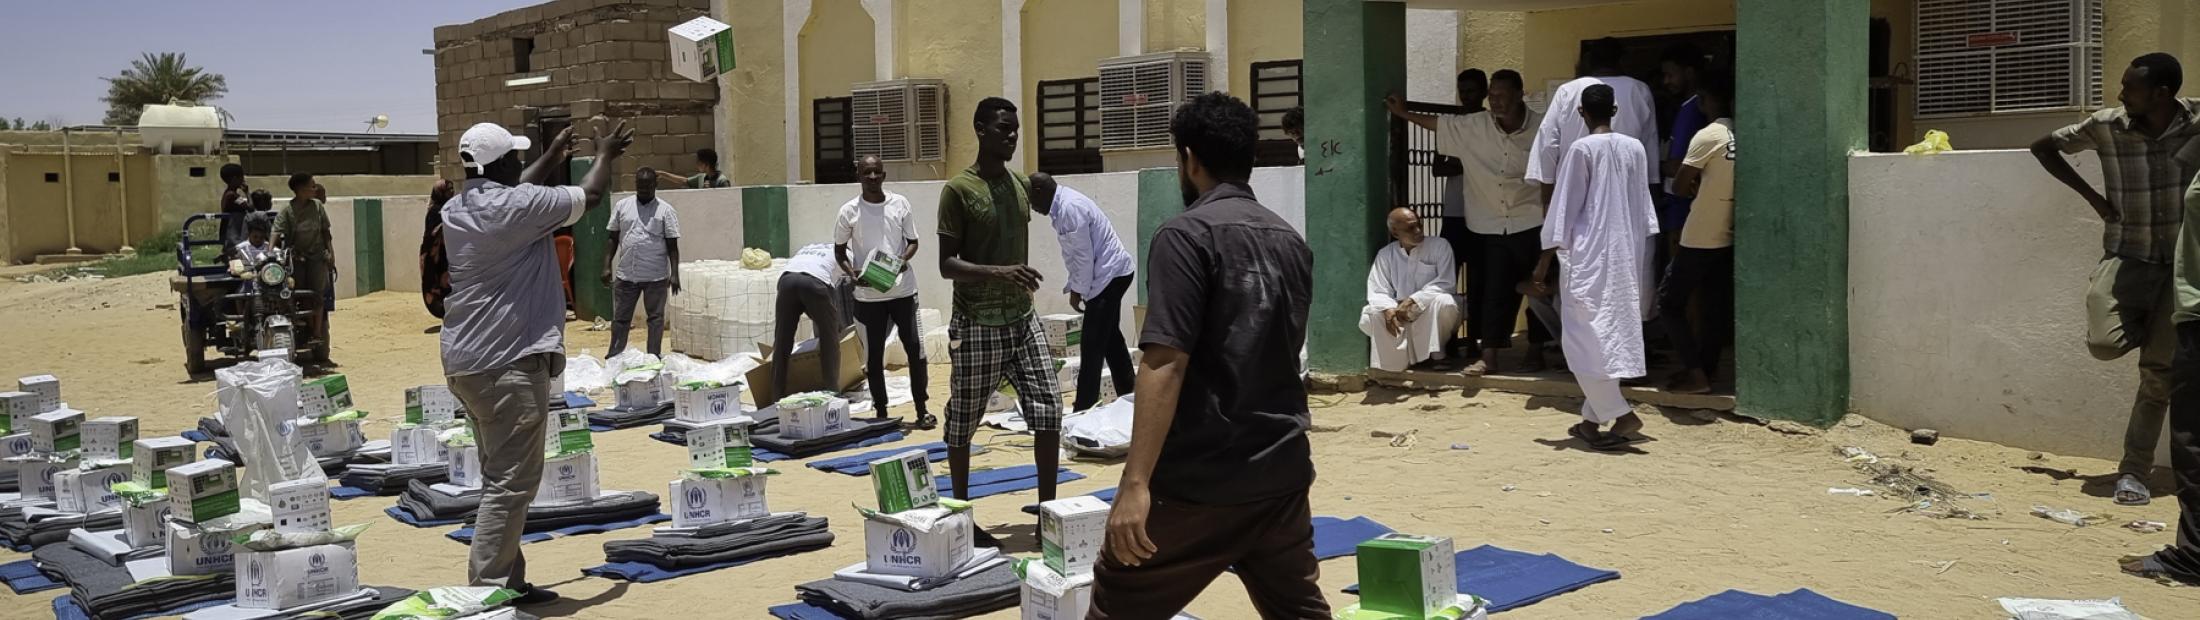 Após 4 meses de guerra, os líderes humanitários apelam à ação para pôr fim à tragédia no Sudão 